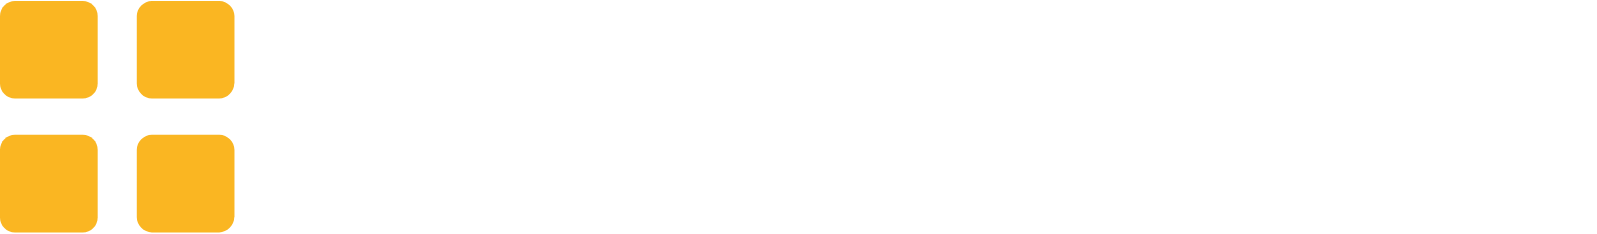 Greggs logo grand pour les fonds sombres (PNG transparent)